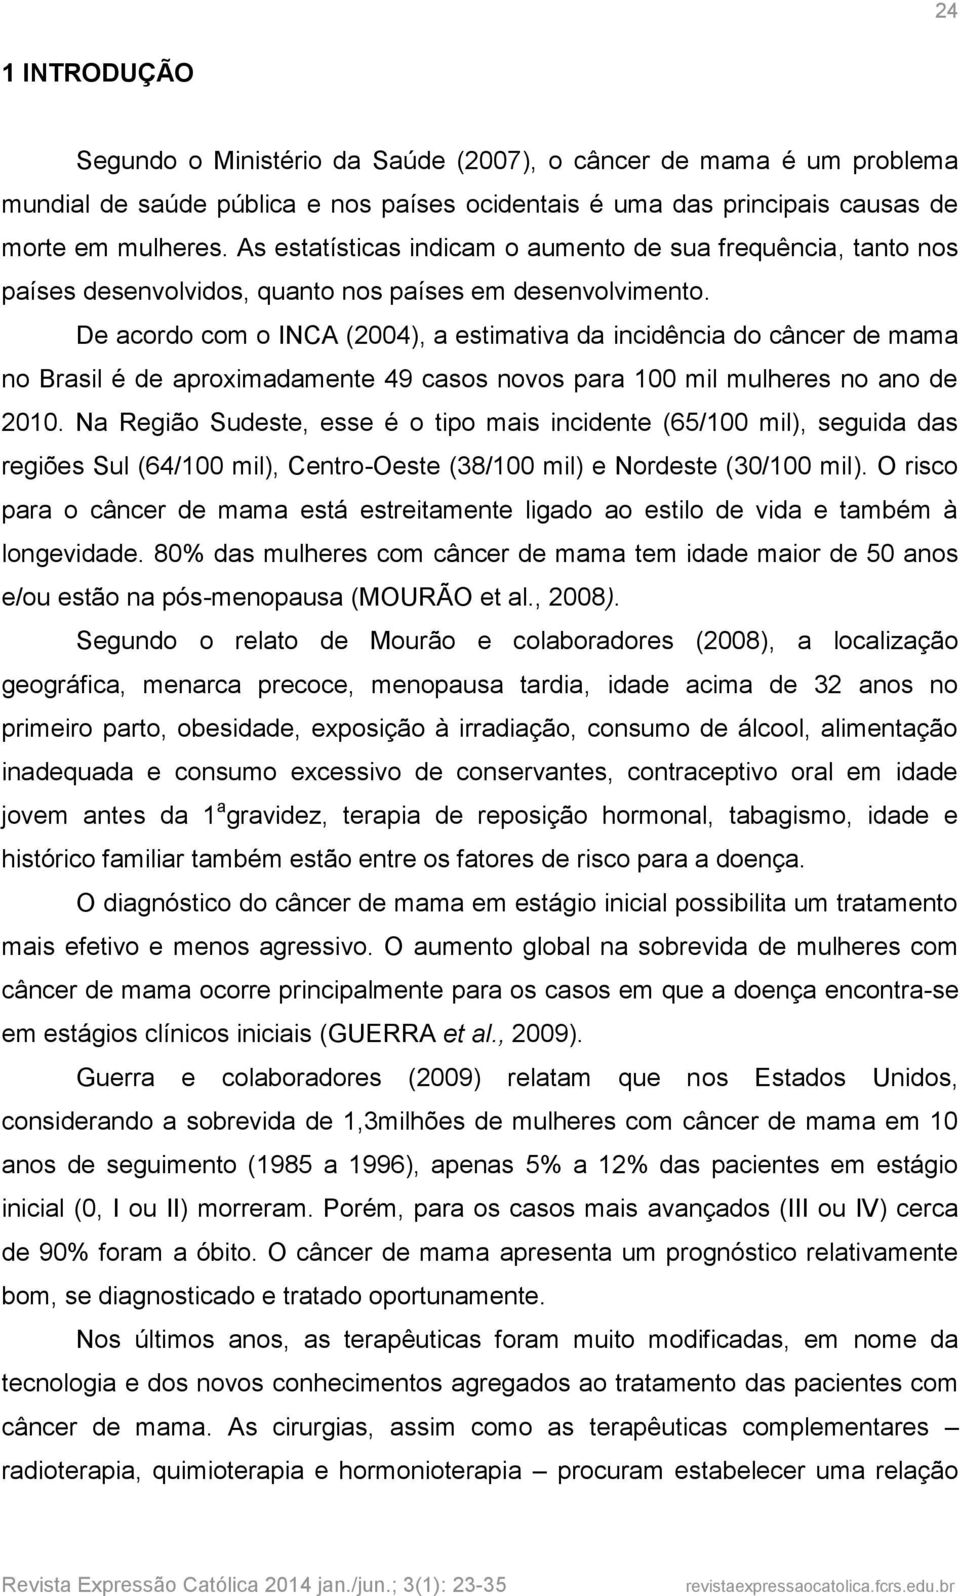 De acordo com o INCA (2004), a estimativa da incidência do câncer de mama no Brasil é de aproximadamente 49 casos novos para 100 mil mulheres no ano de 2010.